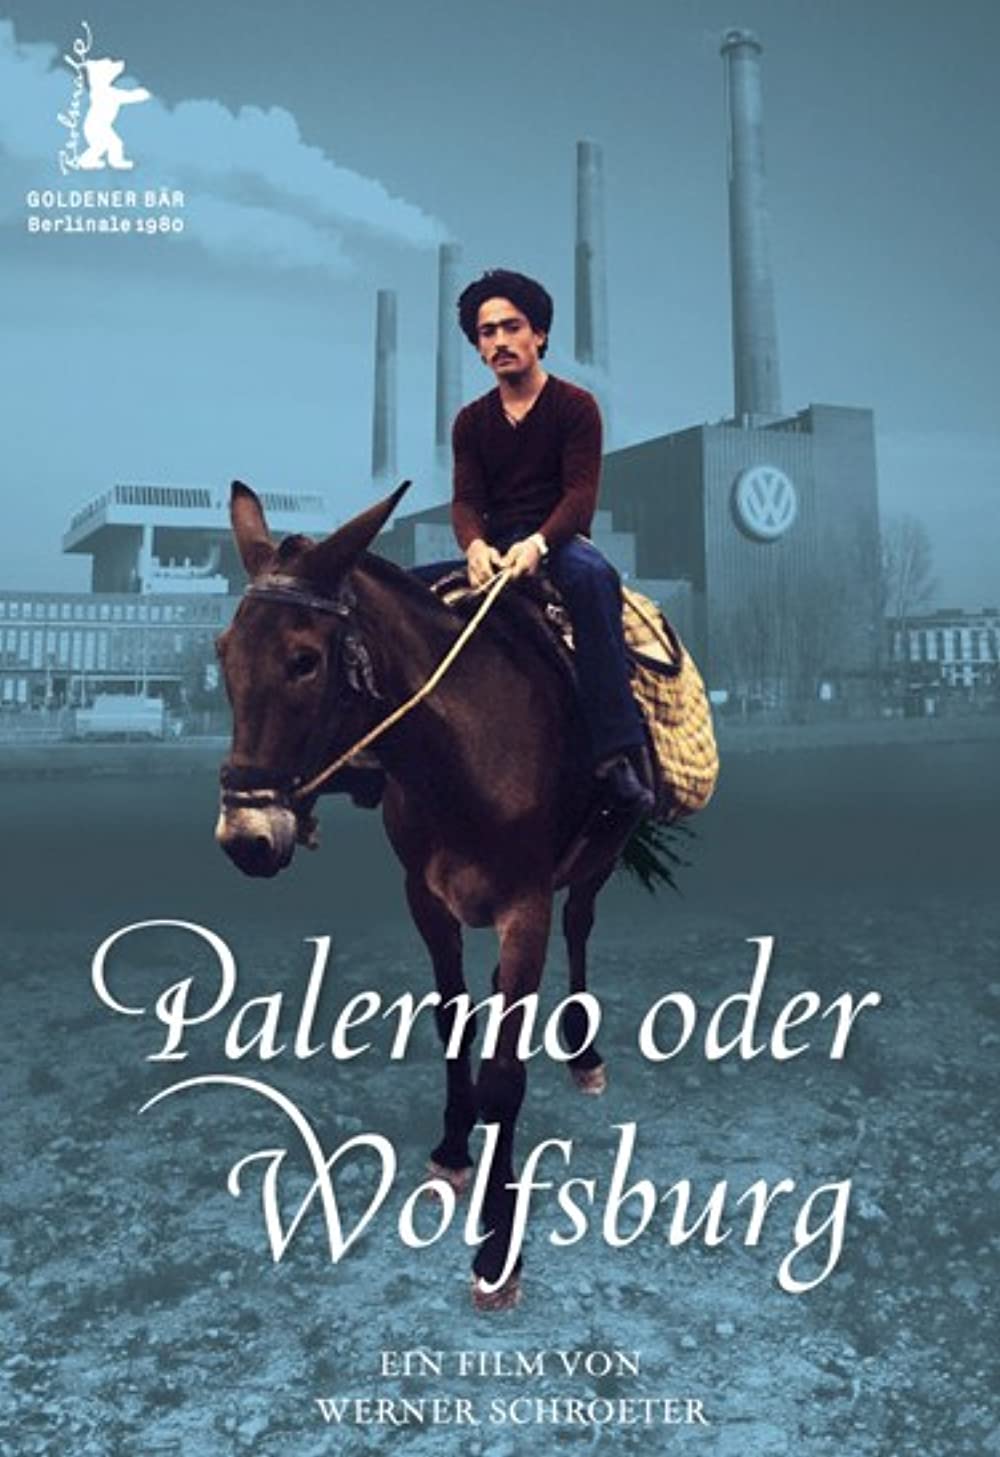 Filmbeschreibung zu Palermo oder Wolfsburg